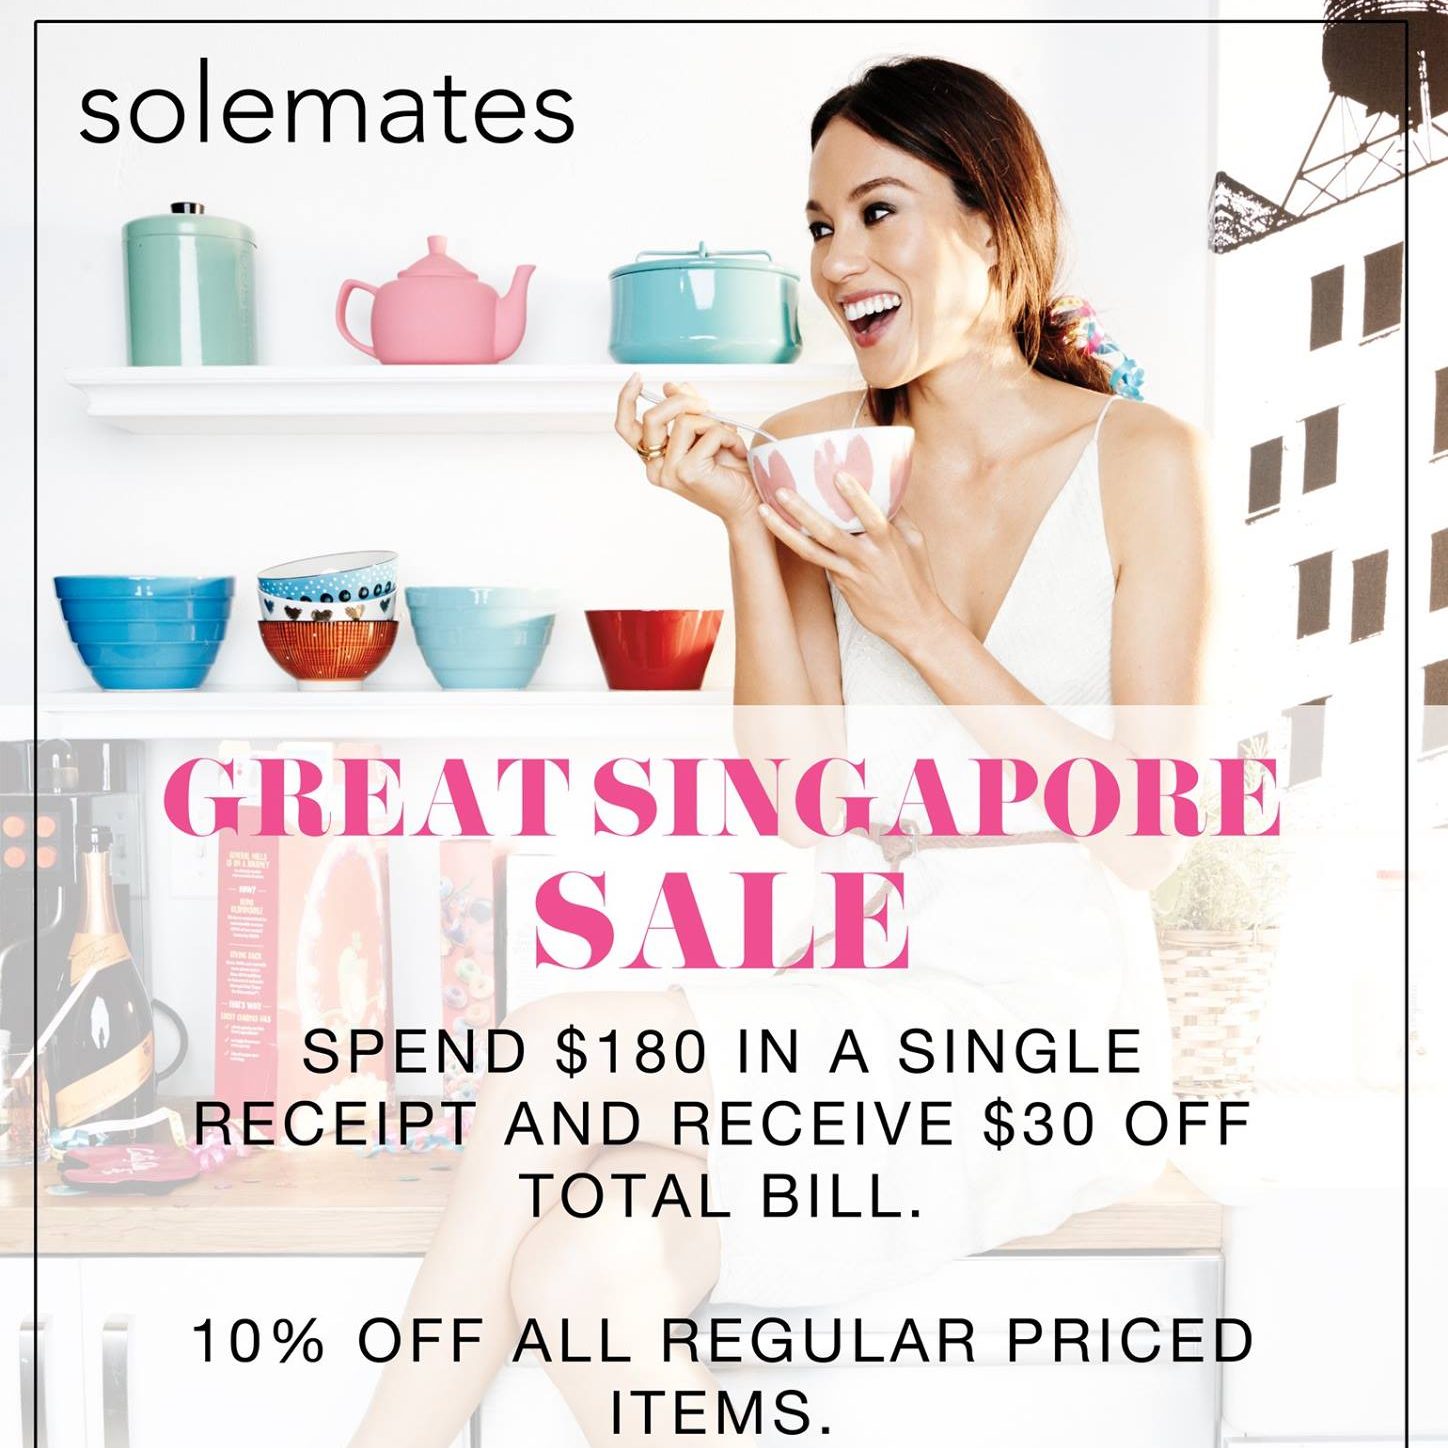 Solemates SG GSS Spend $180 & Enjoy $30 Off ends 1 Jul 2016